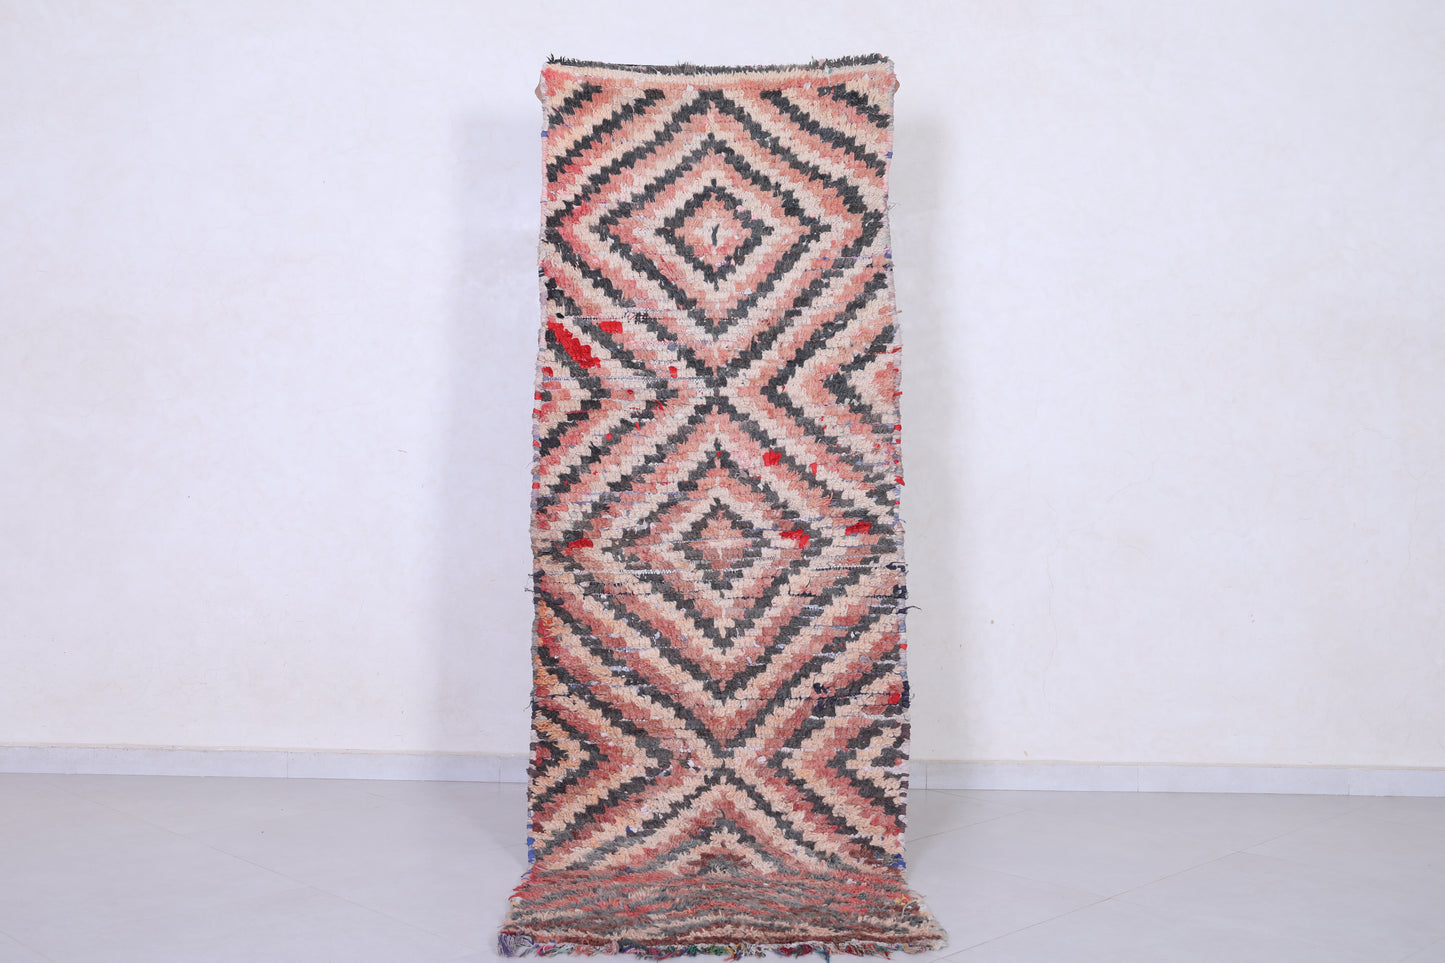 Vintage handmade moroccan berber runner rug 2.8 FT X 7.8 FT